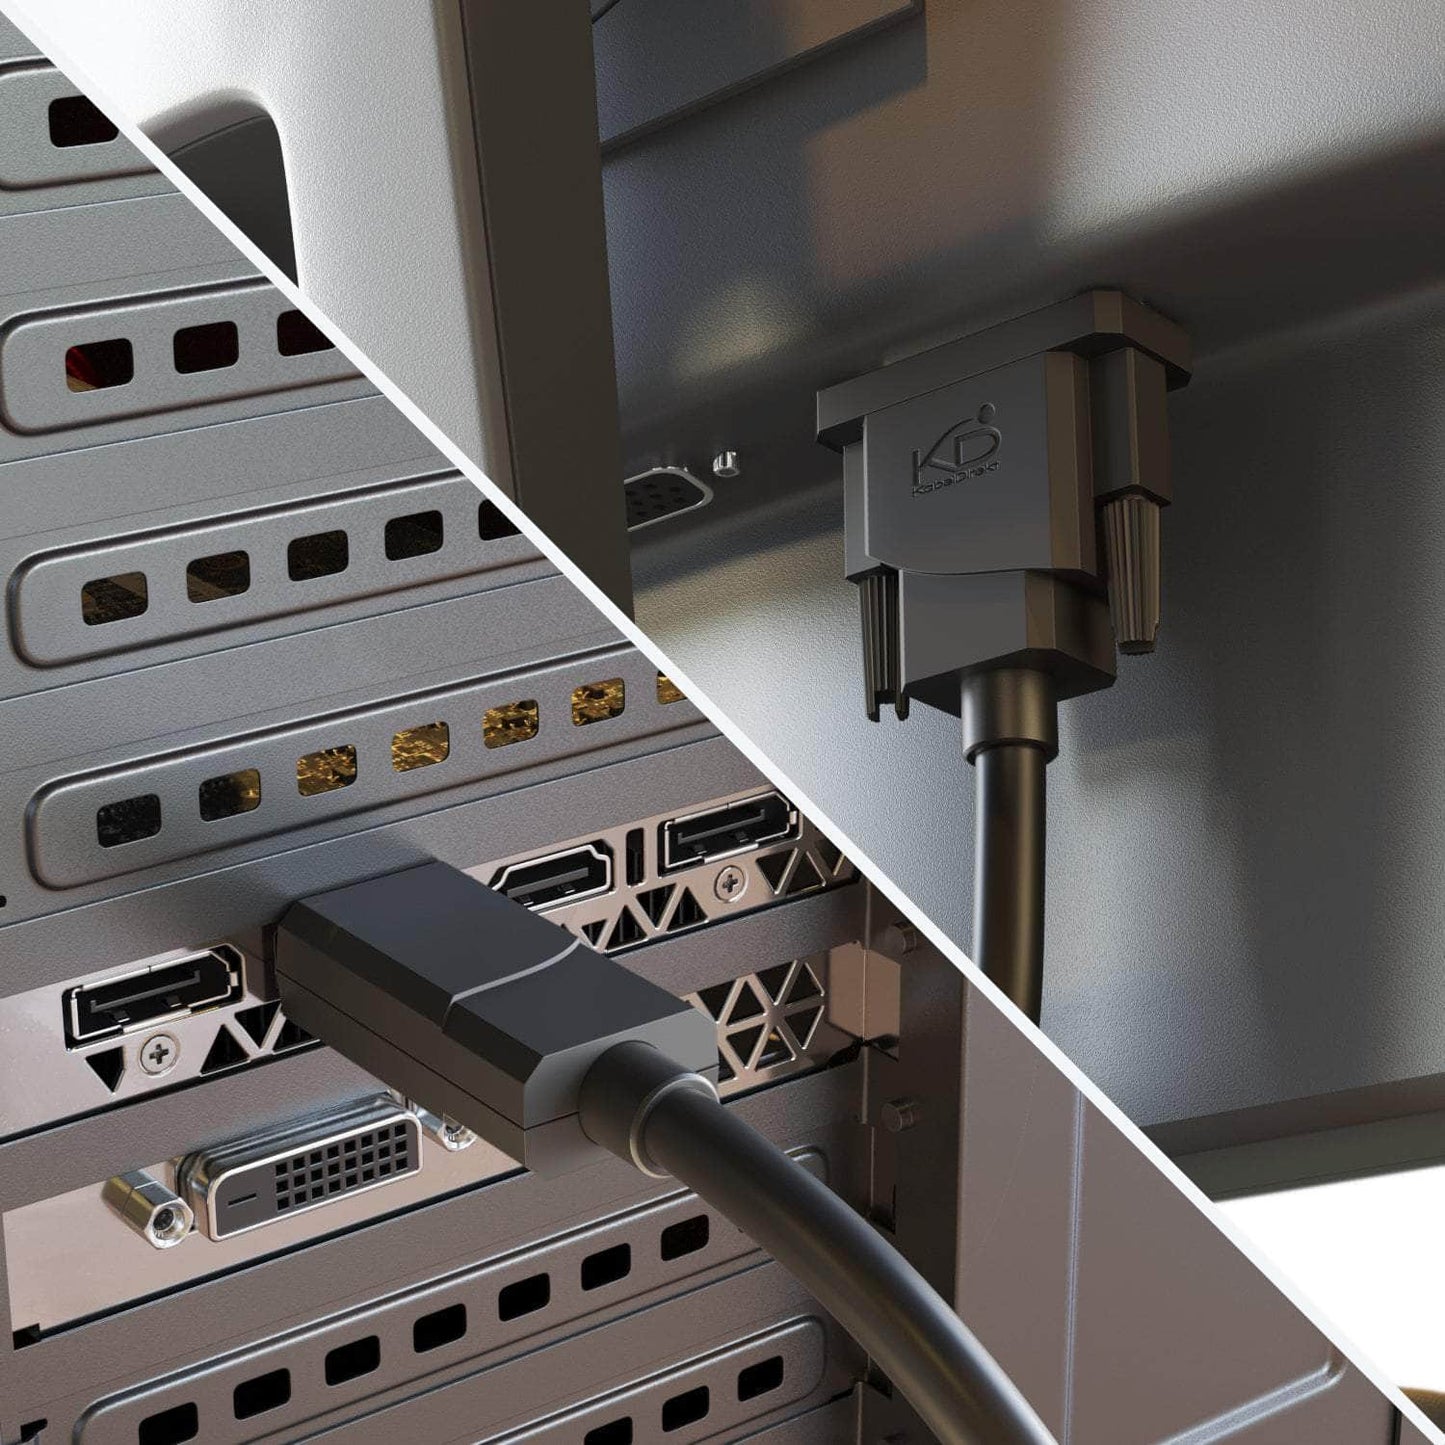 DisplayPort-DVI-Adapterkabel (Stecker-Stecker) – 2 m